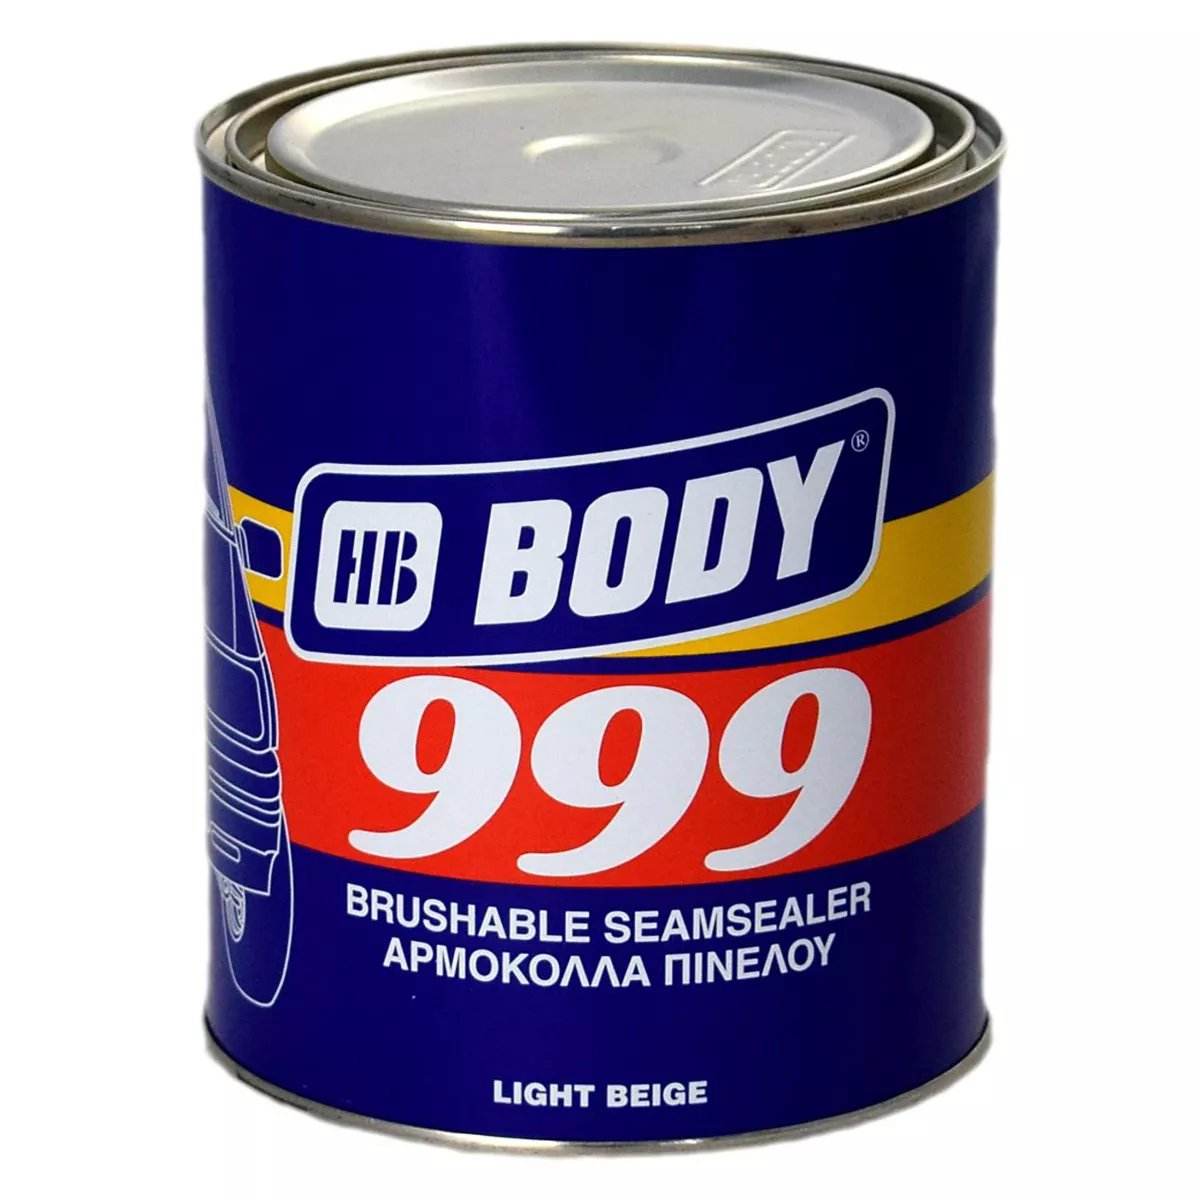 Герметик 999. Body 999 герметик. HB body герметик 999. HB body герметик 110 Seal. Герметик под кисть для авто.